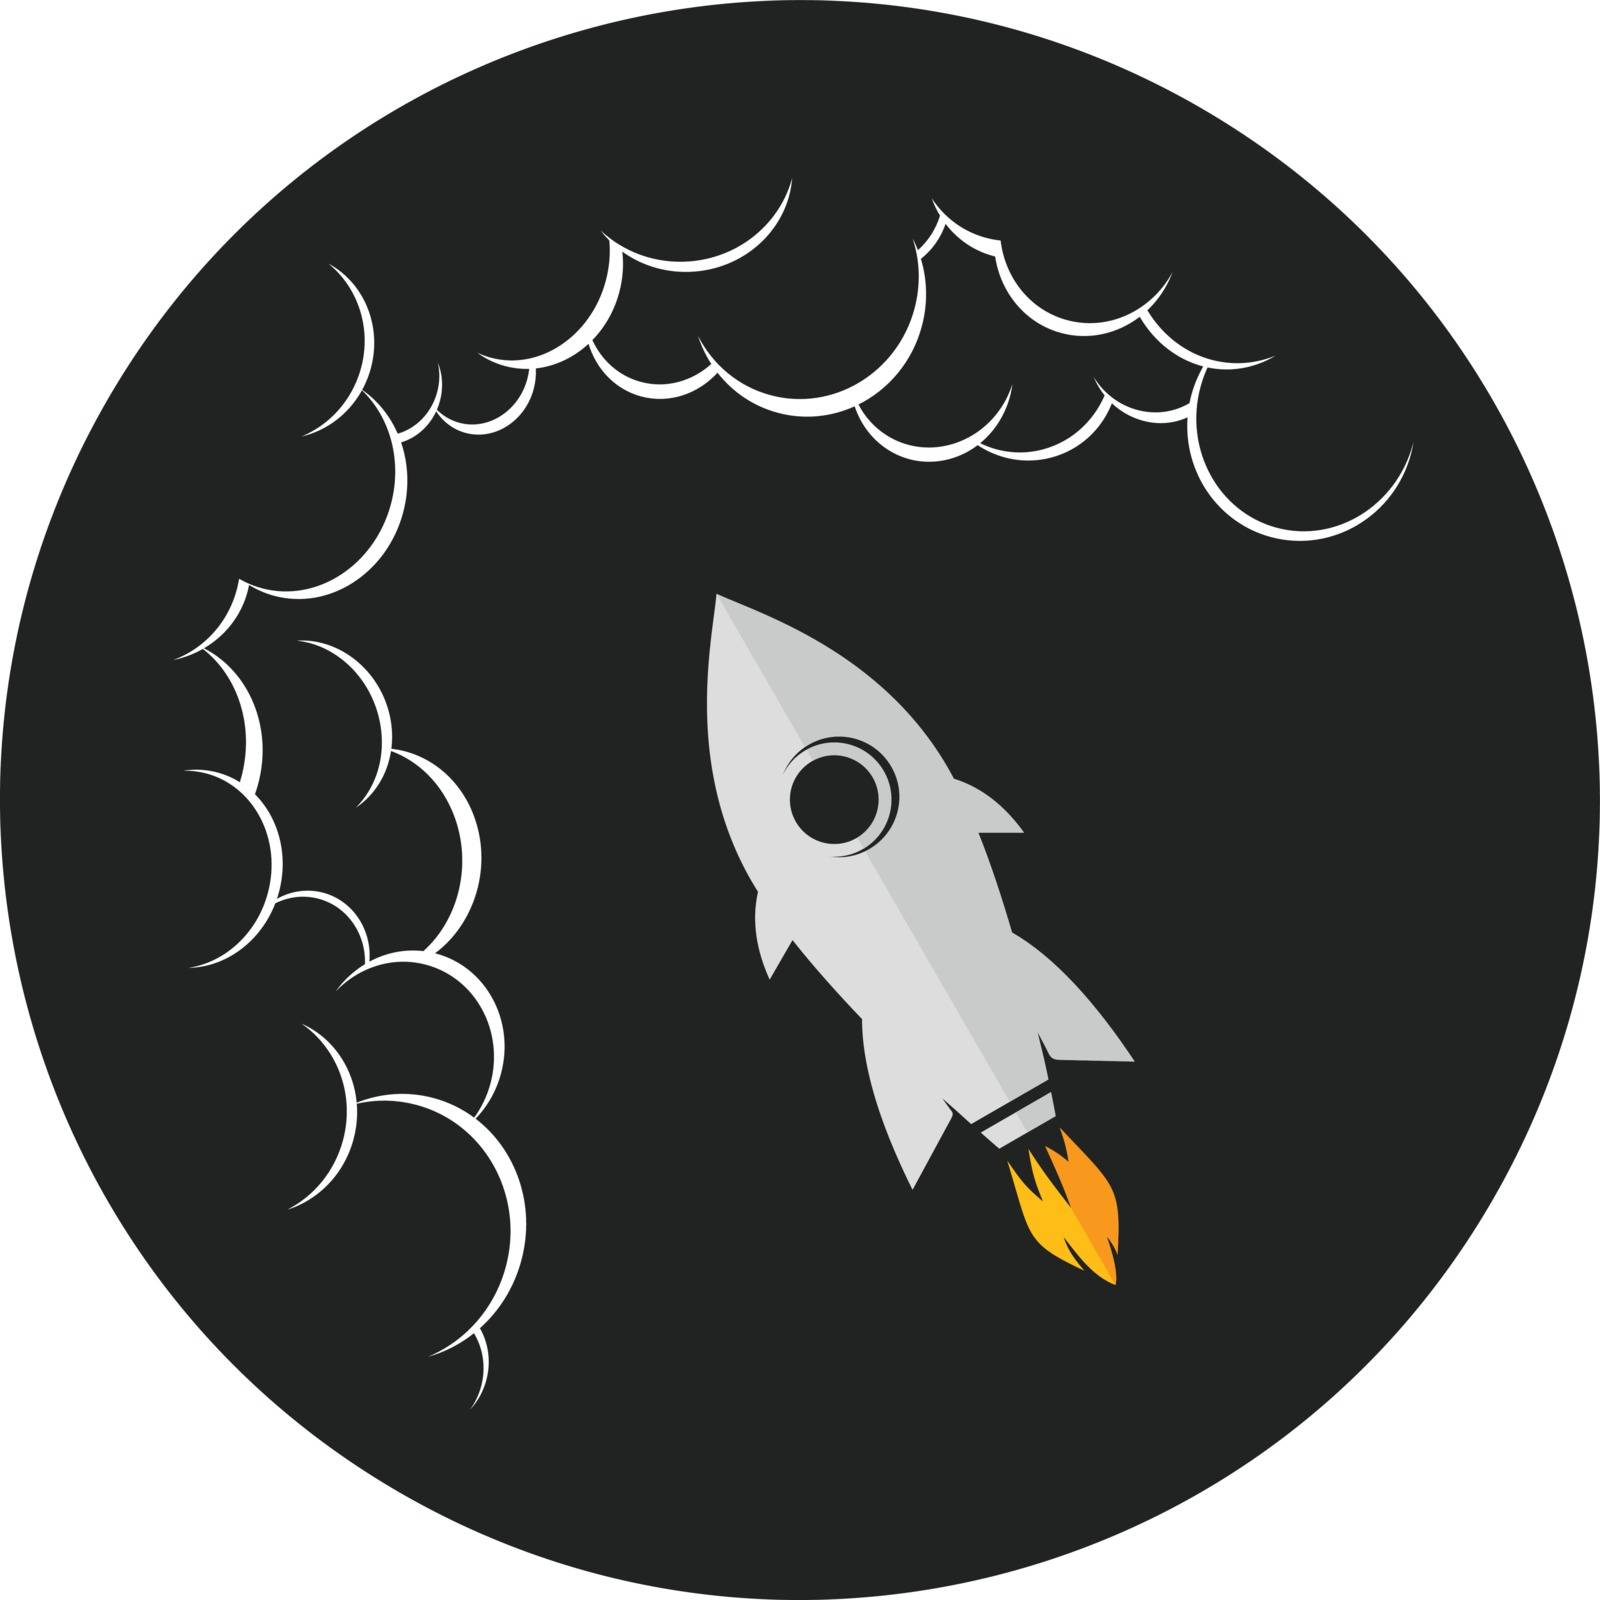 space exploration shuttle ship logo icon sign vector art